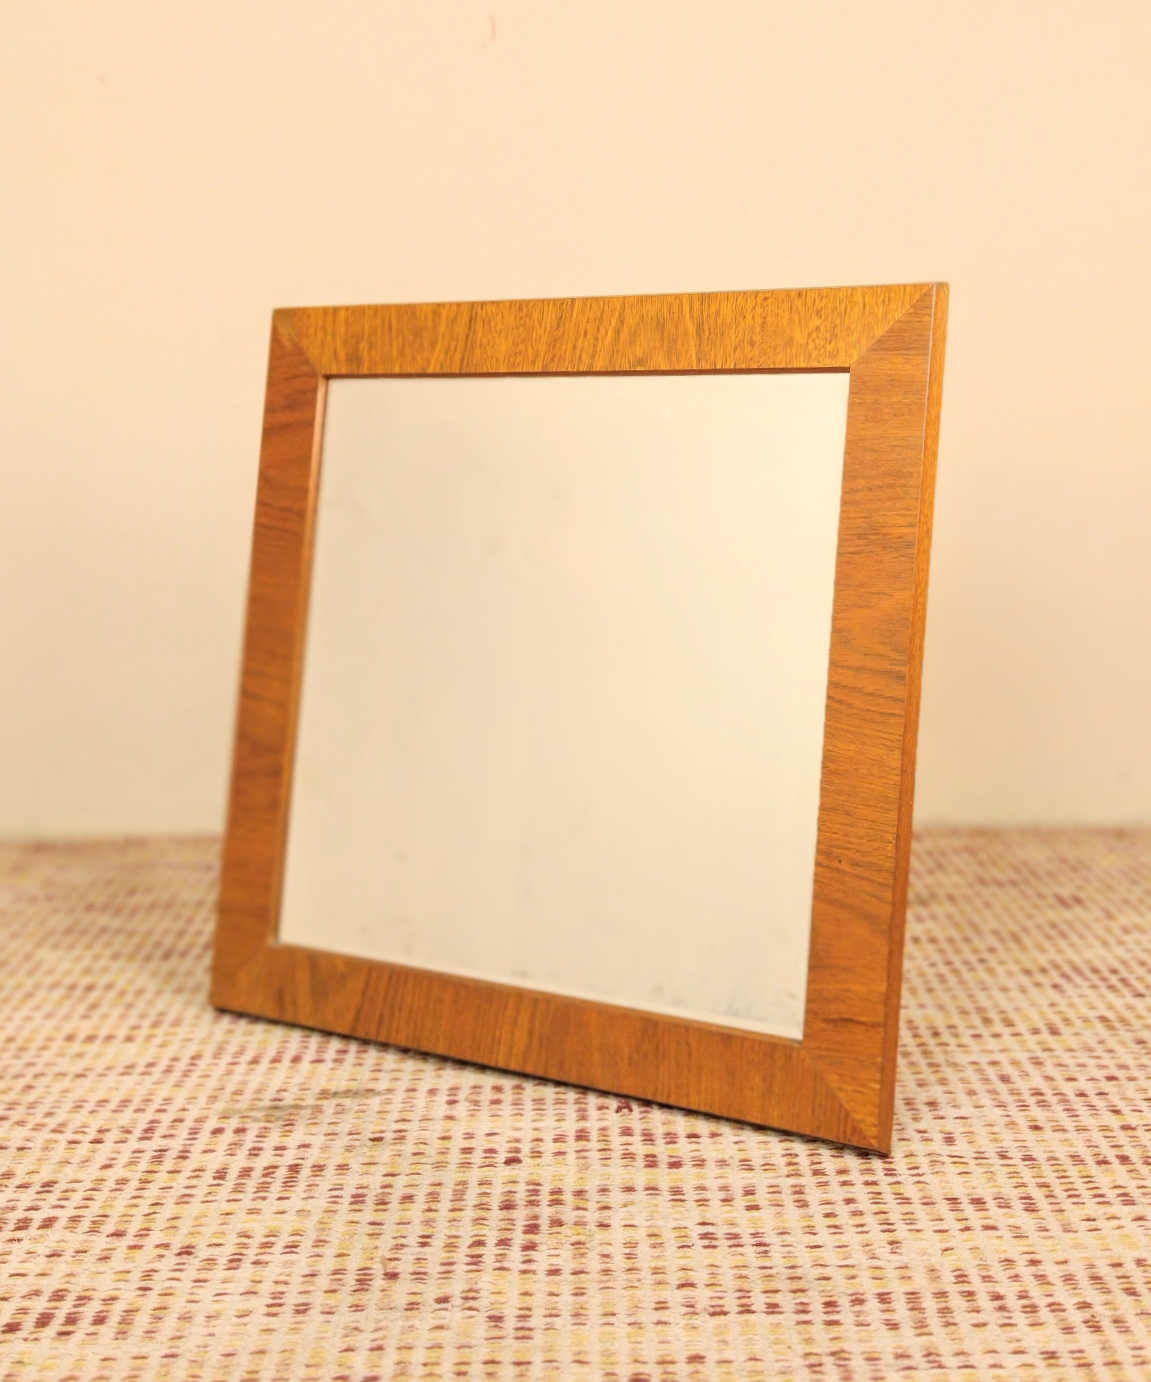 Espelho bisotado quadrado anos 80 em cerejeira (70cm X 70cm)